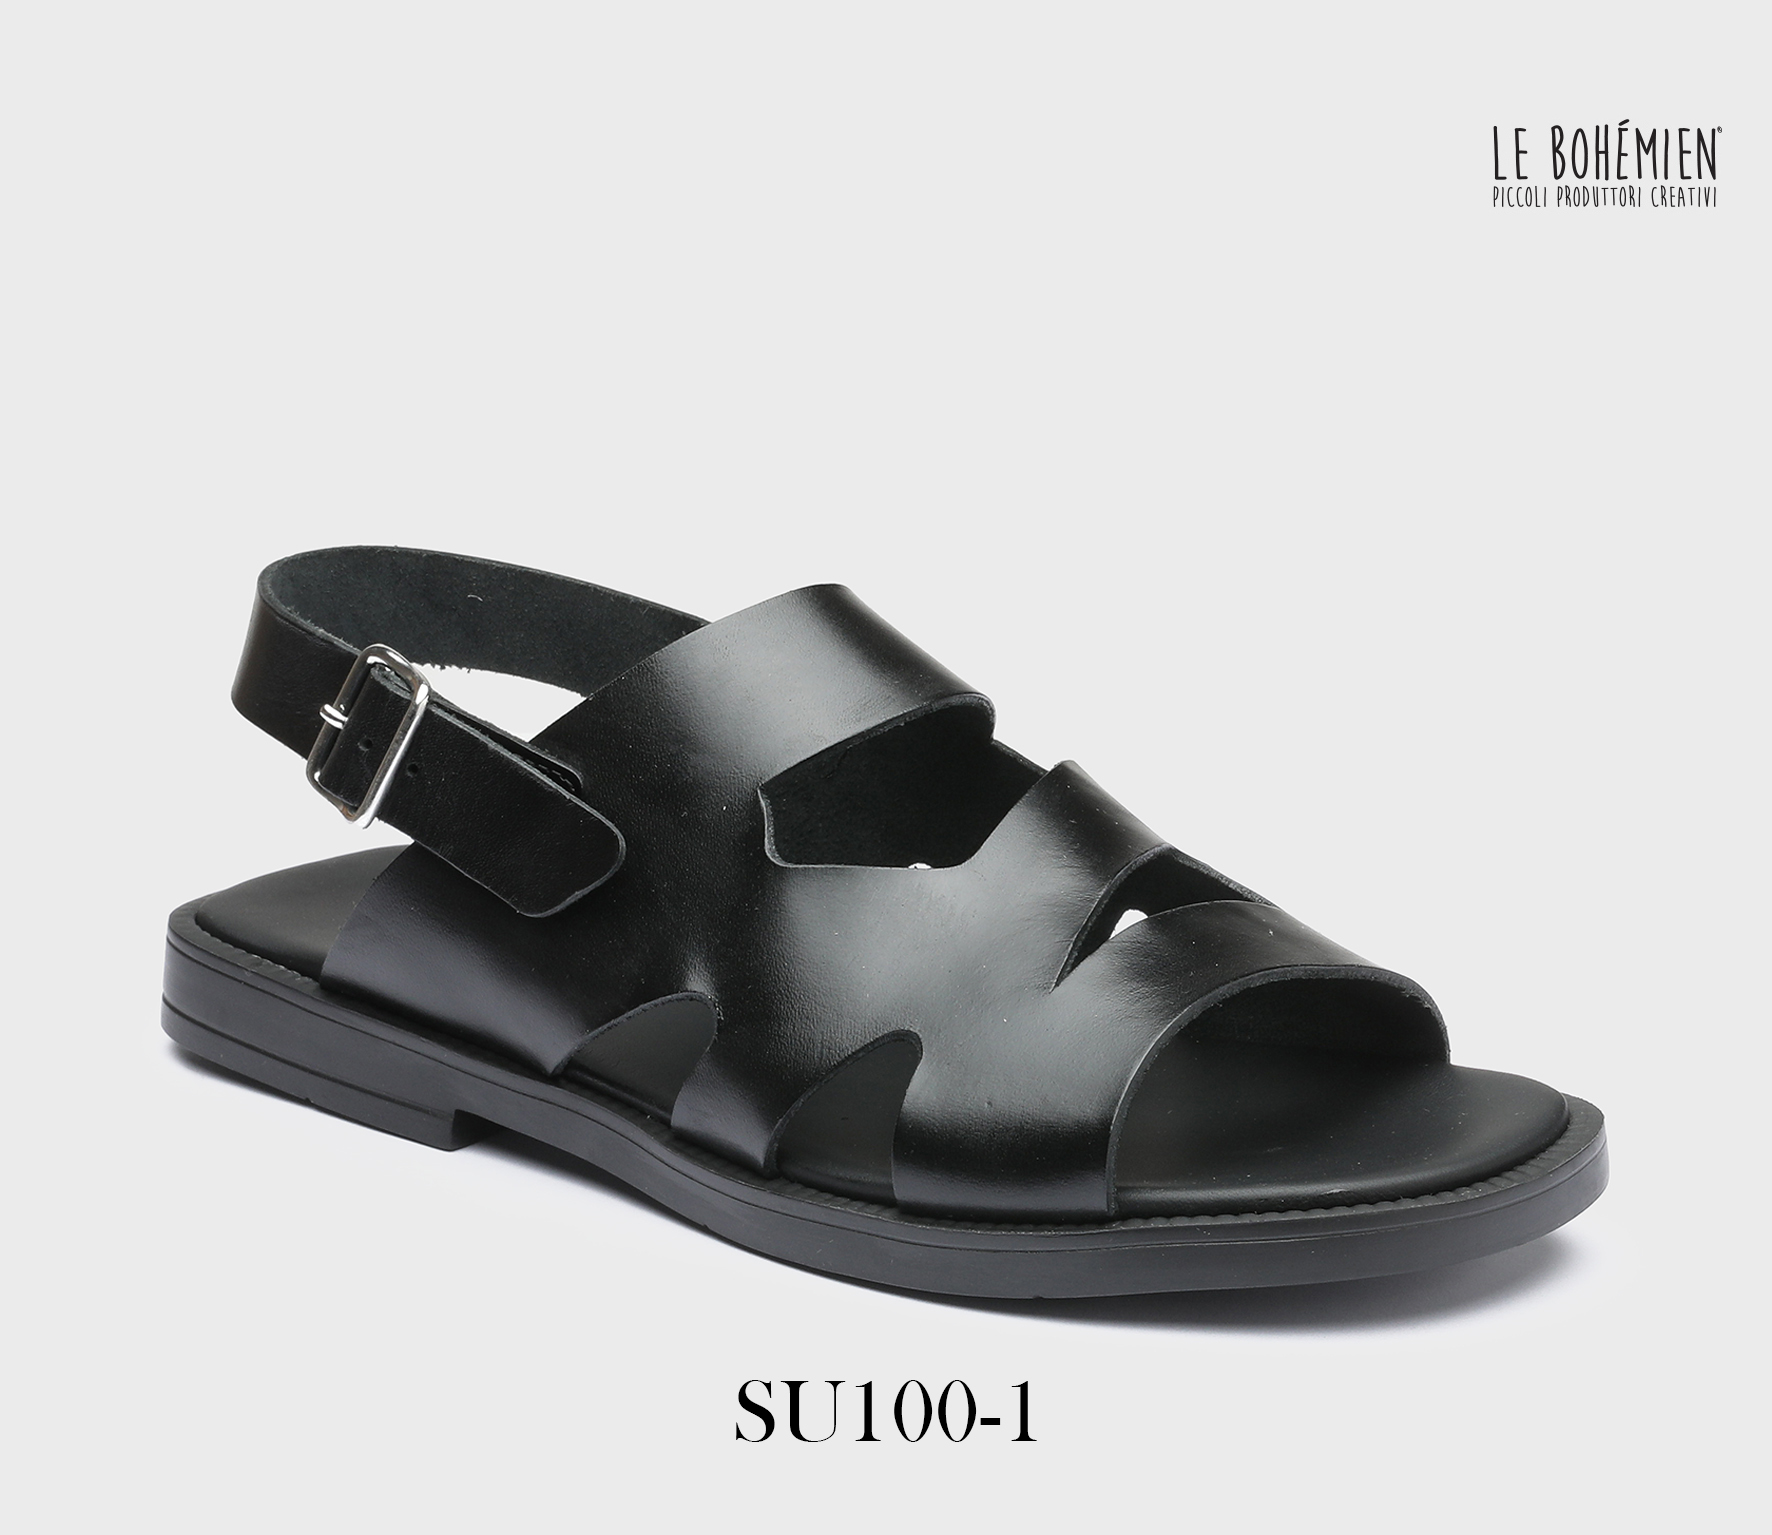 Men's Sandals Shoes SU100-1